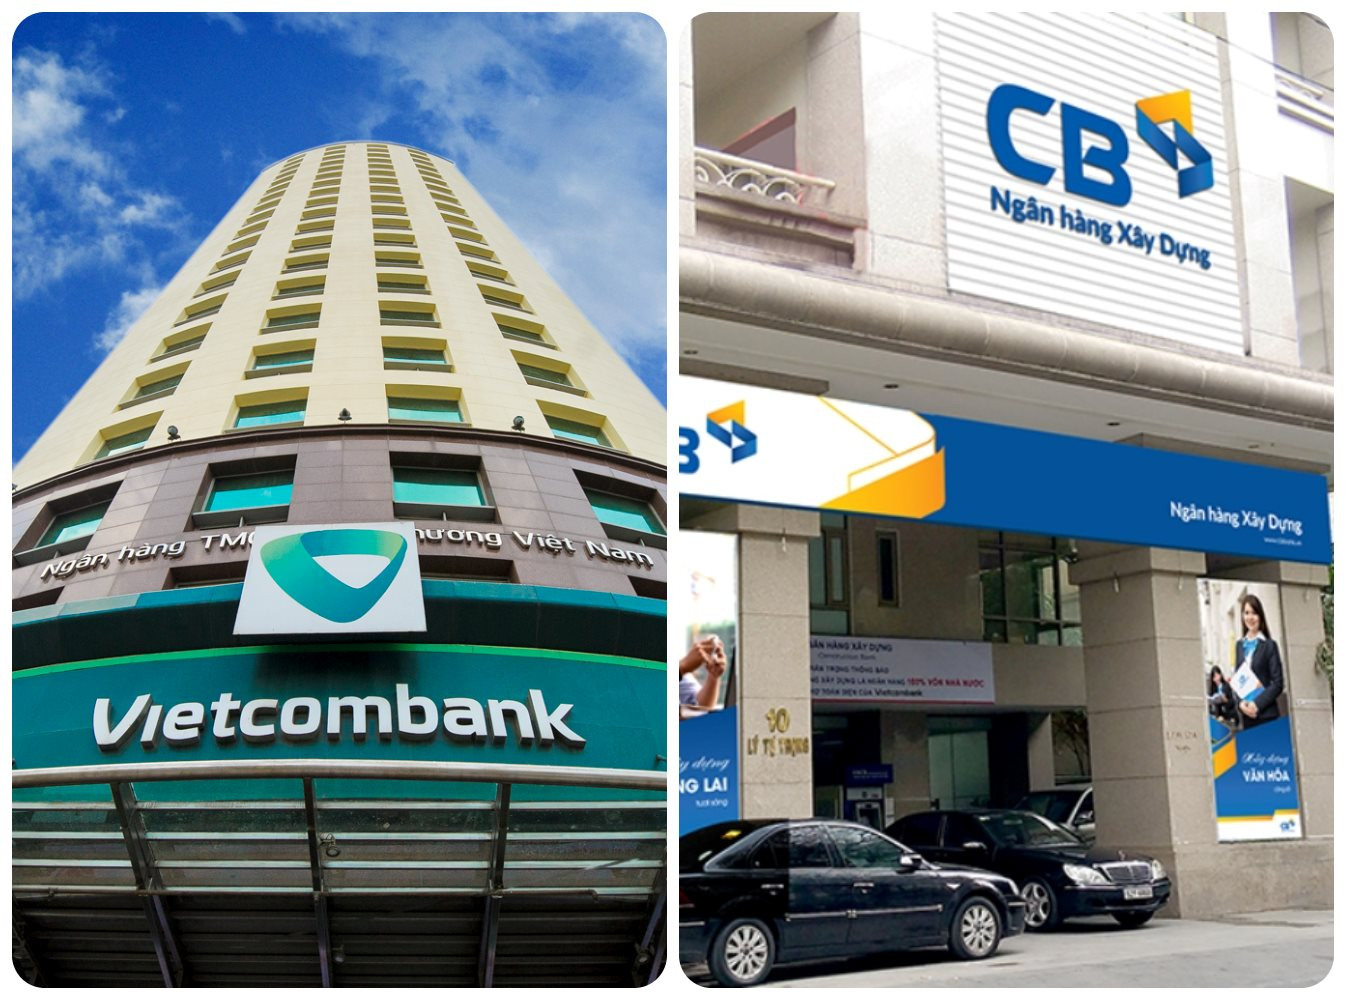 Trở thành ngân hàng mẹ của Ngân hàng Xây dựng, Vietcombank được gì? - Ảnh 1.